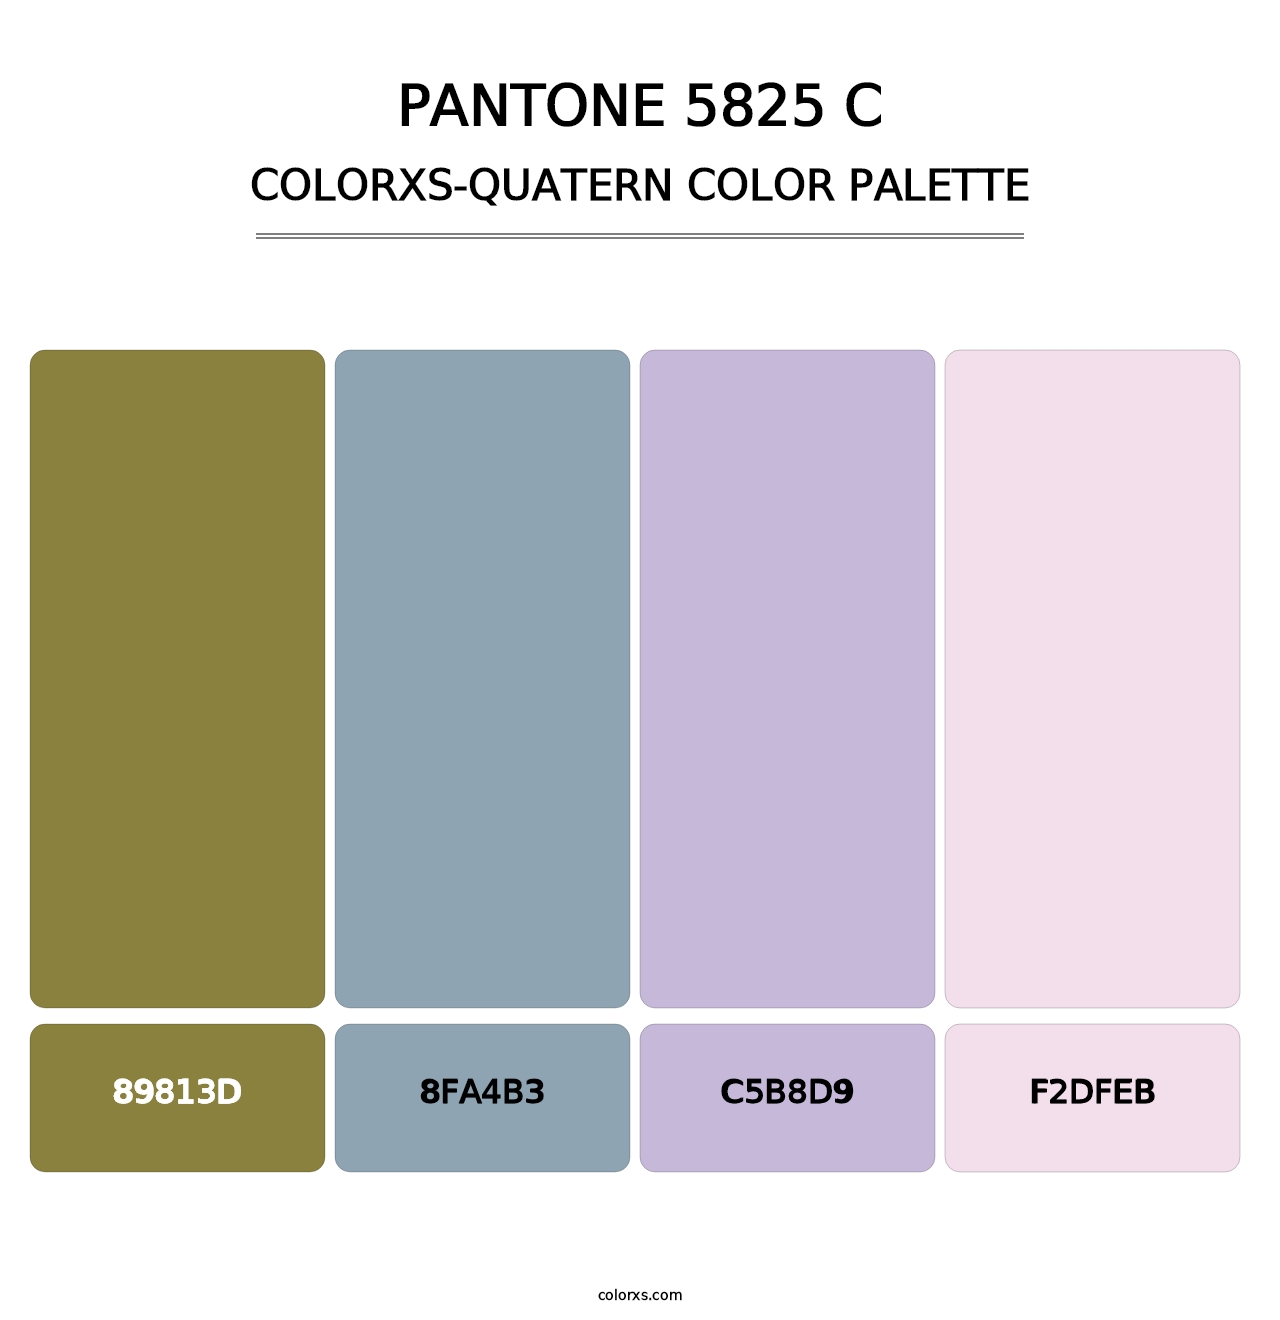 PANTONE 5825 C - Colorxs Quatern Palette